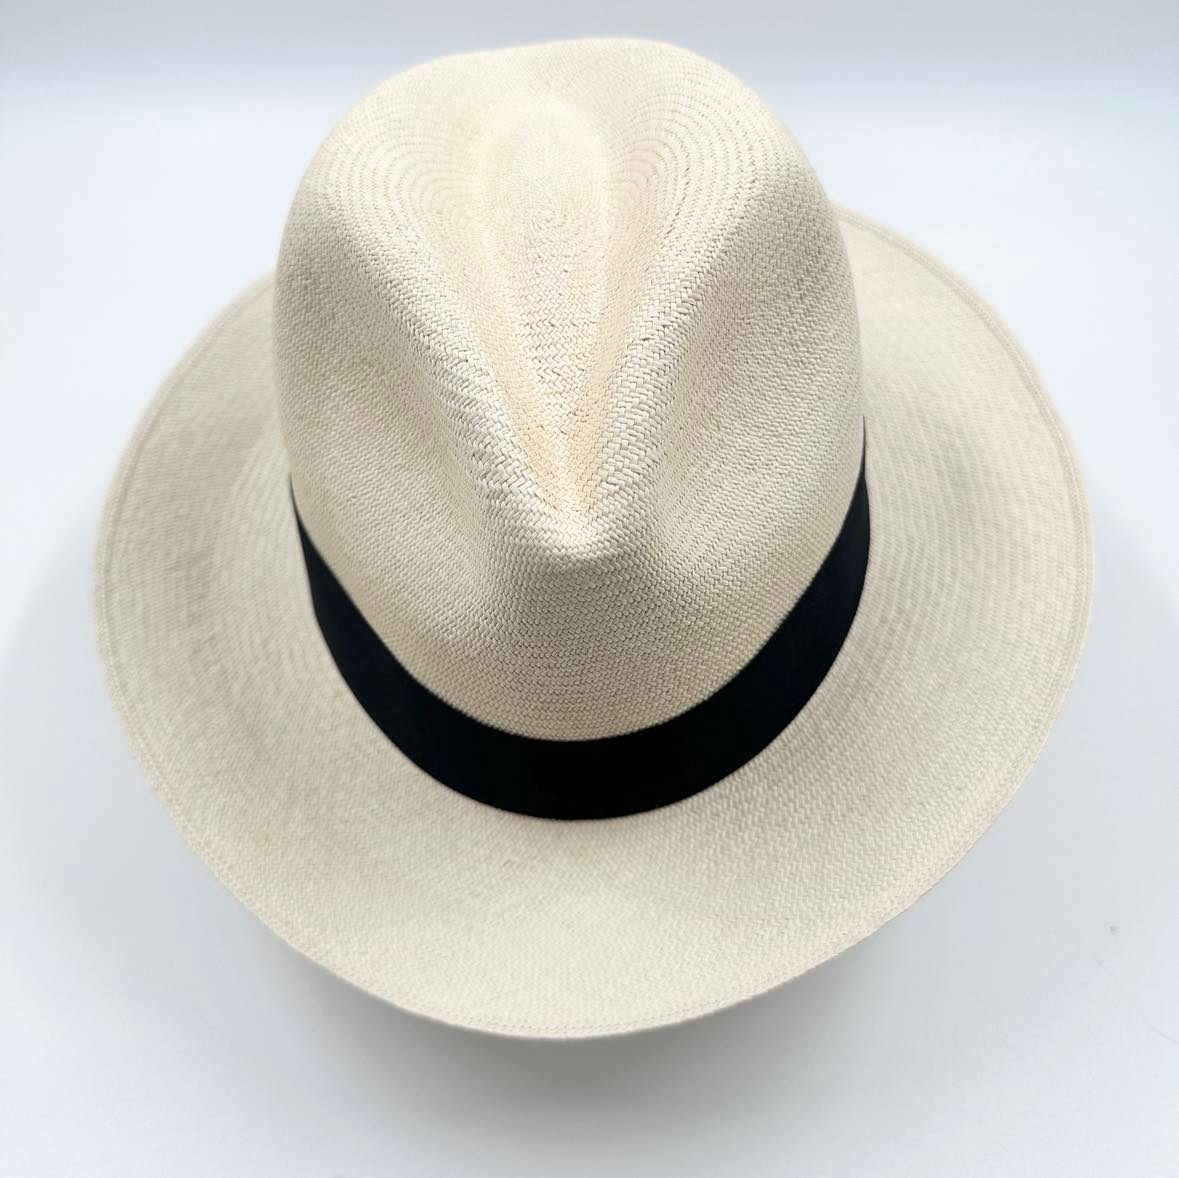 Ægte Montecristi Fedora Panama Hat med en kvalitet på 17-18 fletning pr. inch - håndflettet og unik